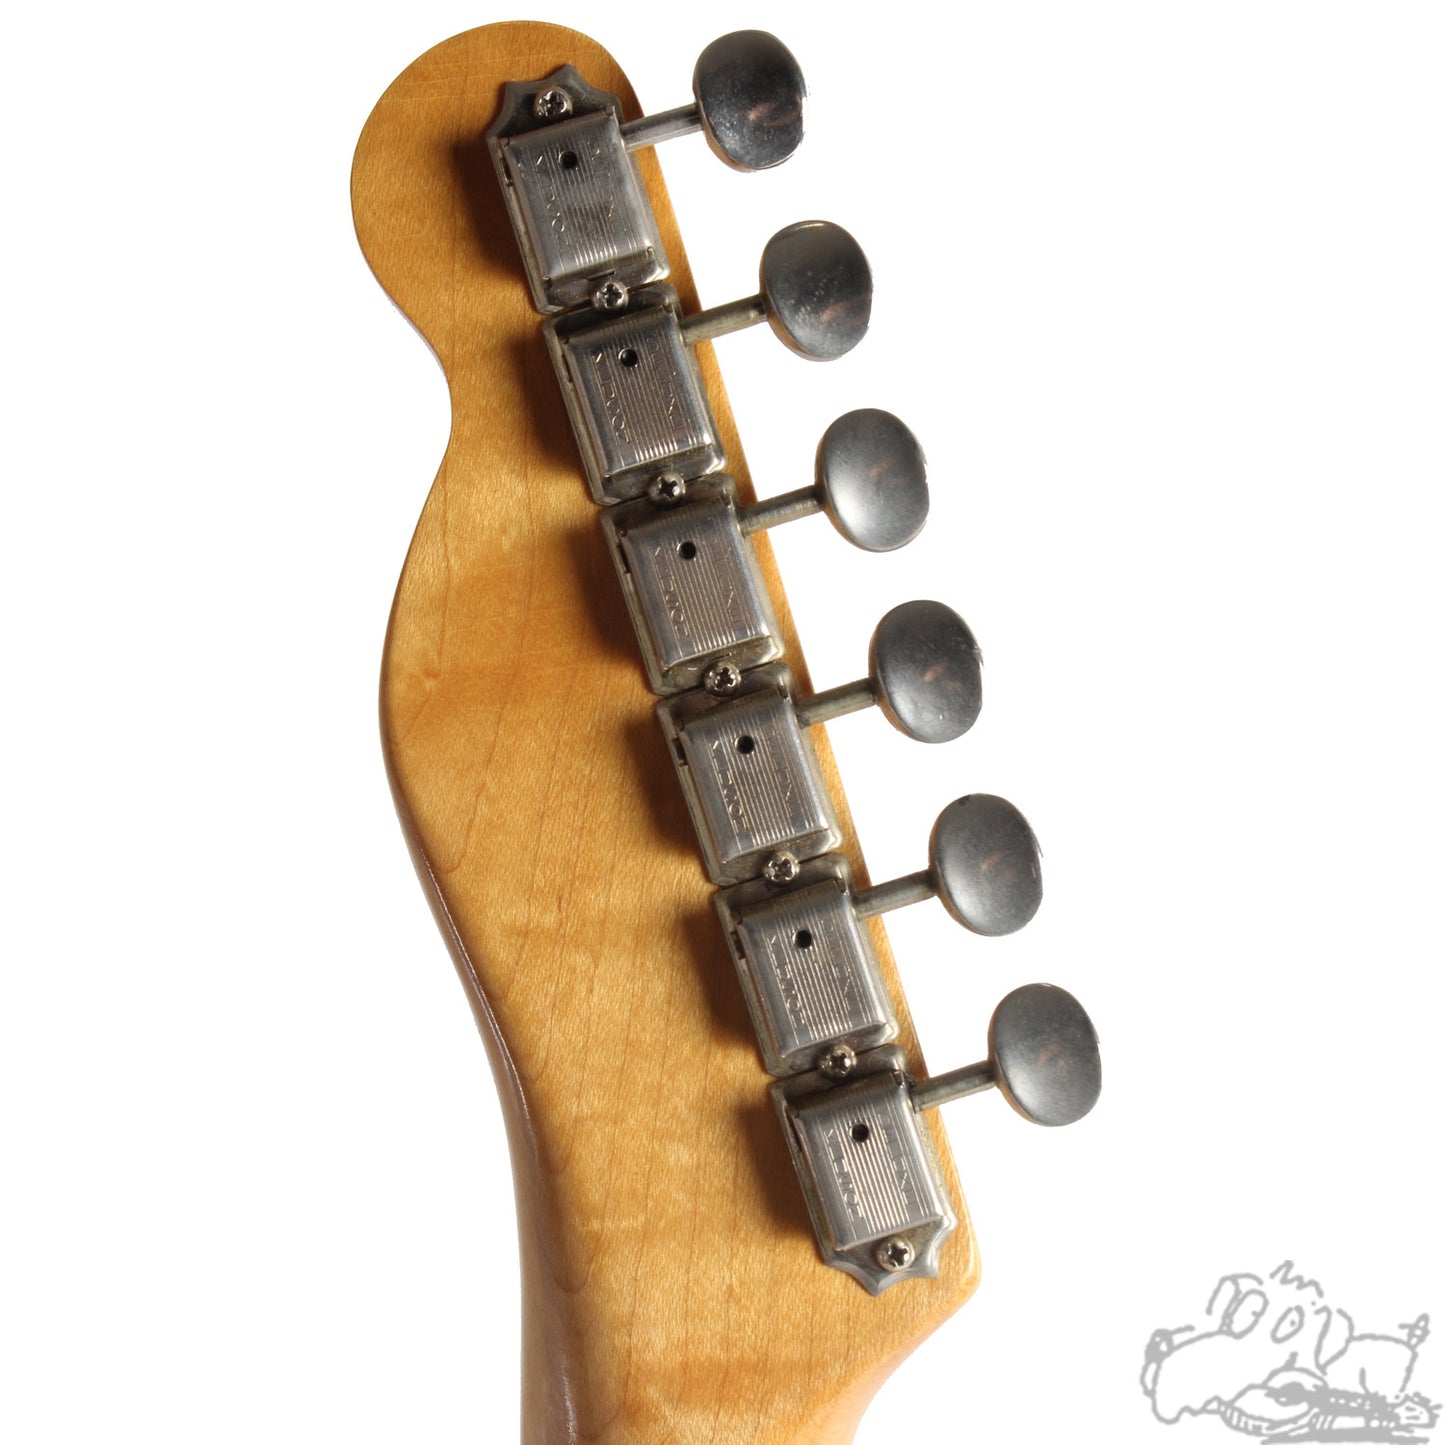 1966 Fender Telecaster Custom